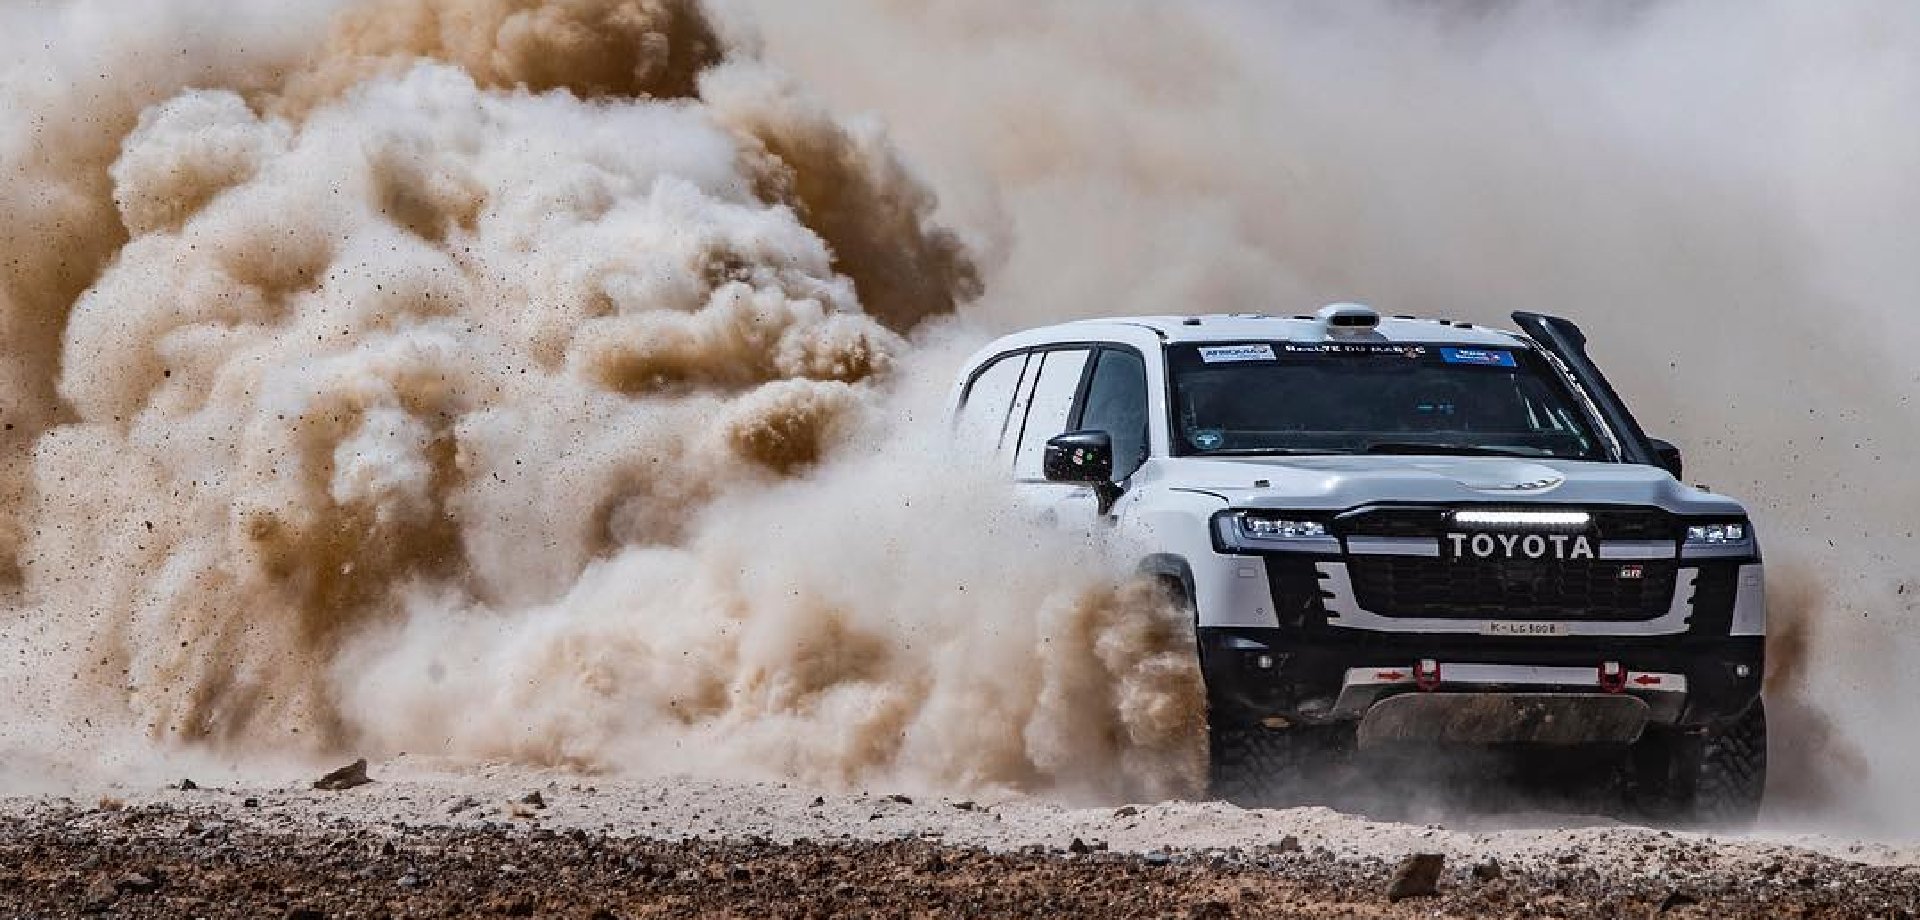 Czy Team Land Cruiser Toyota Autobody sięgnie po 11 z rzędu zwycięstwo w klasie aut fabrycznych w Rajdzie Dakar?